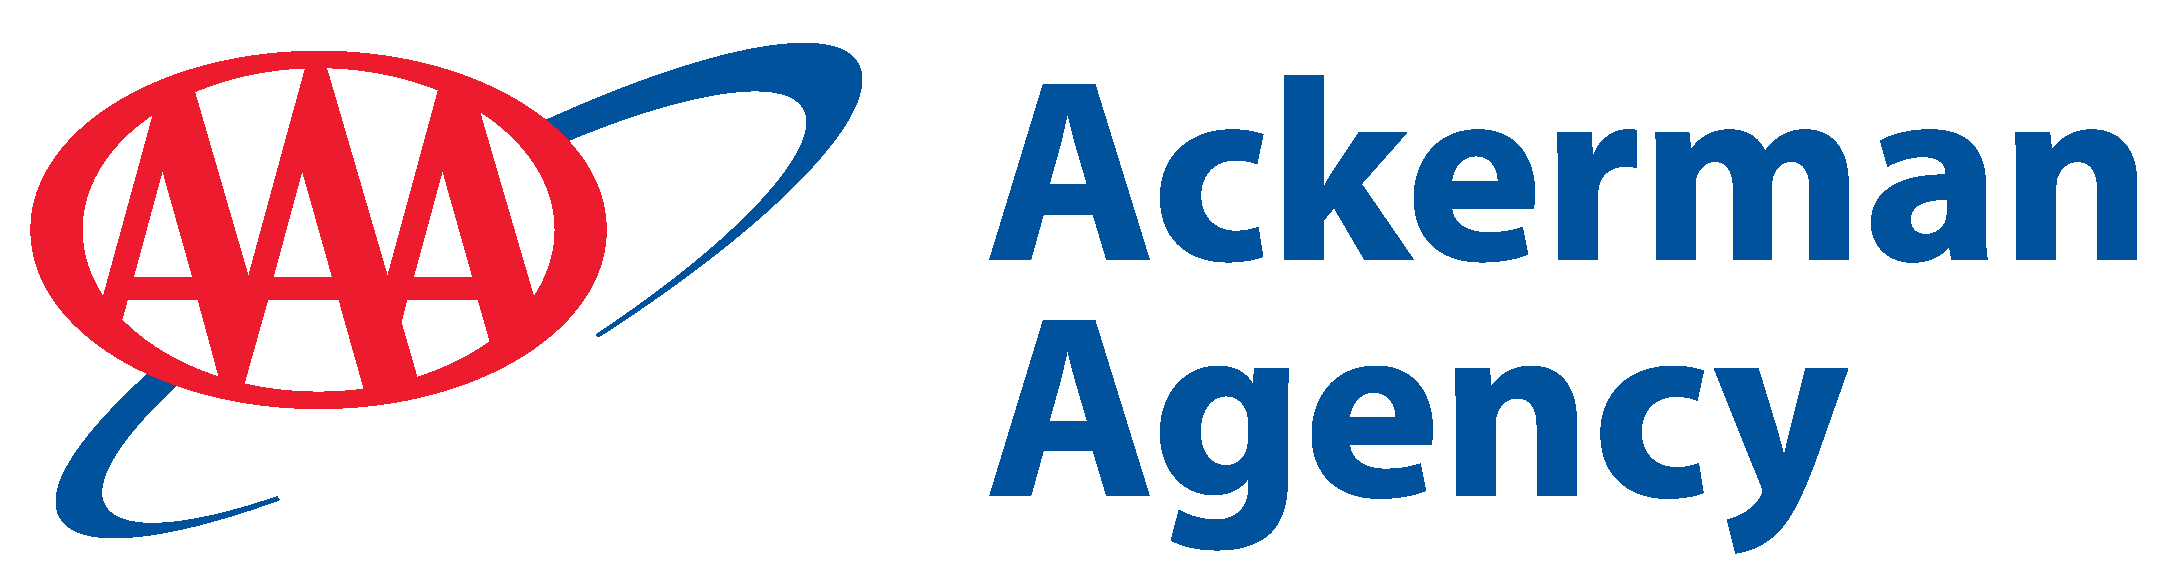 AAA - Ackerman Agency